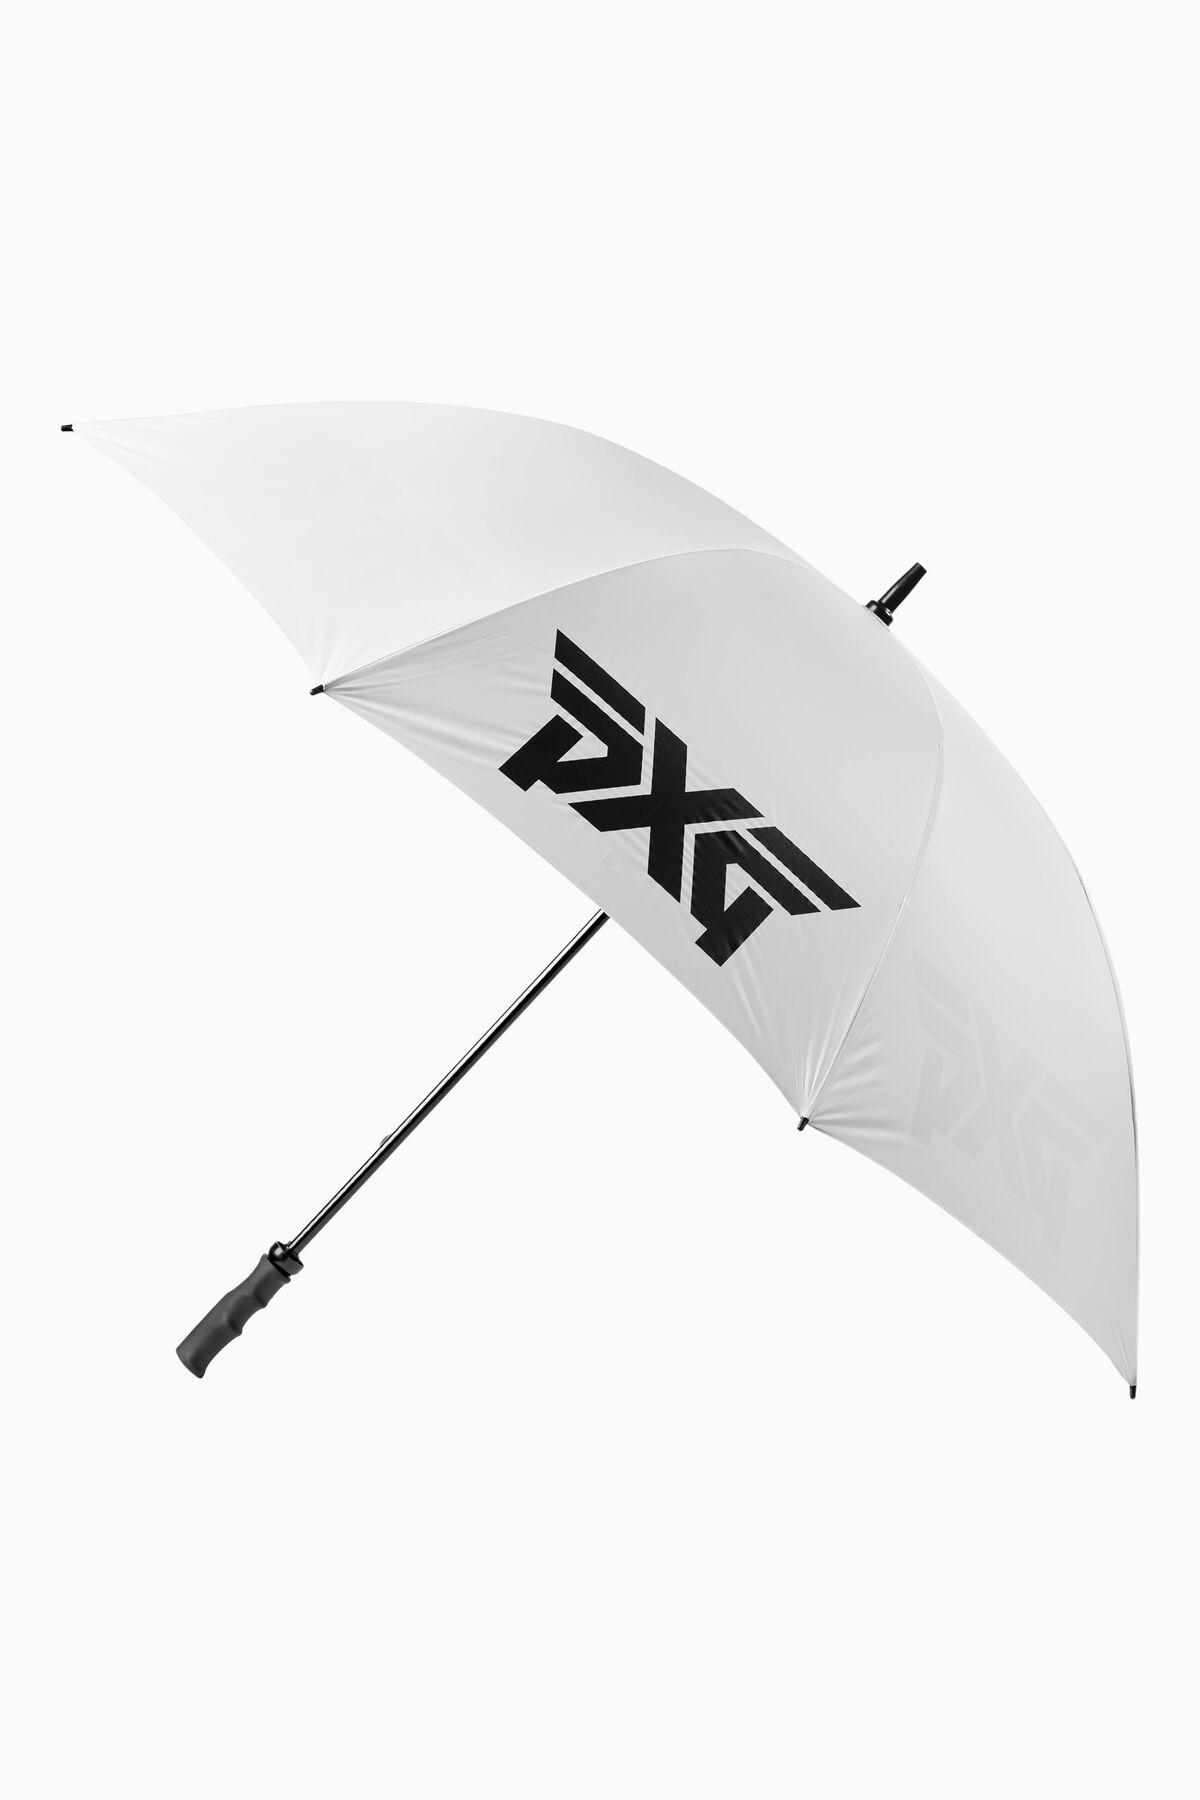 Single Canopy Umbrella White